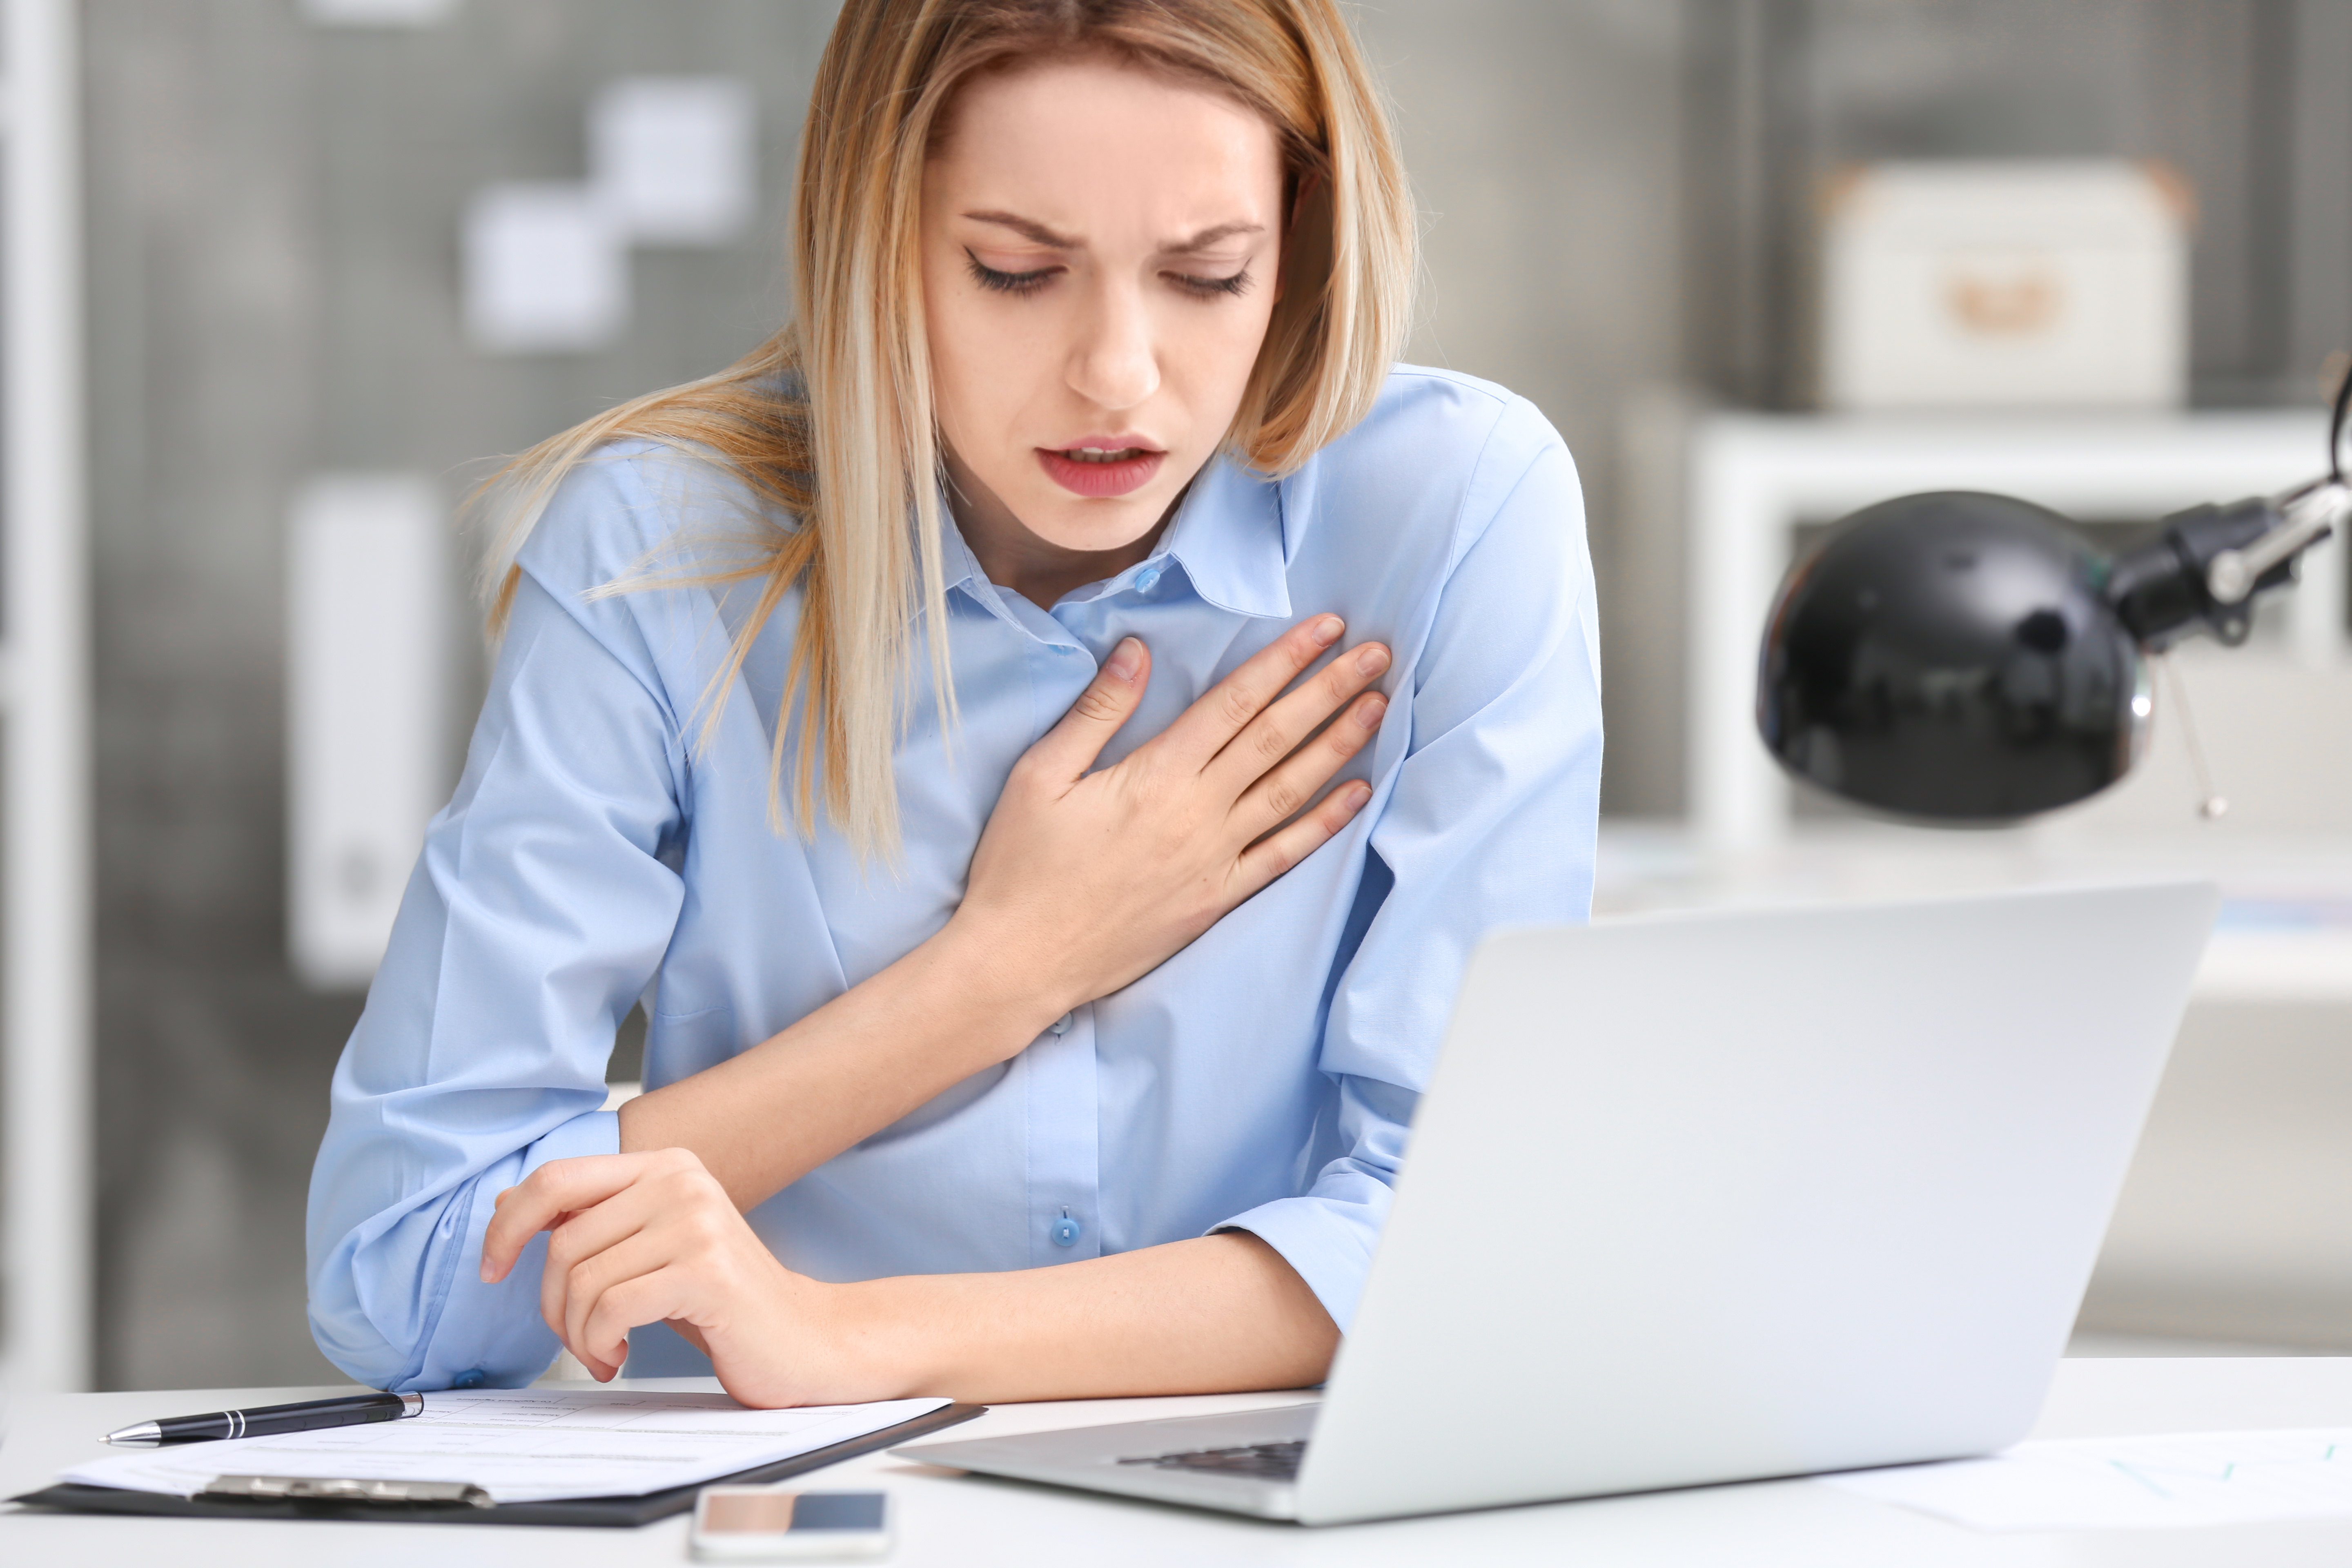 Mladá žena za notebookom sa s bolesťou chytá za srdce